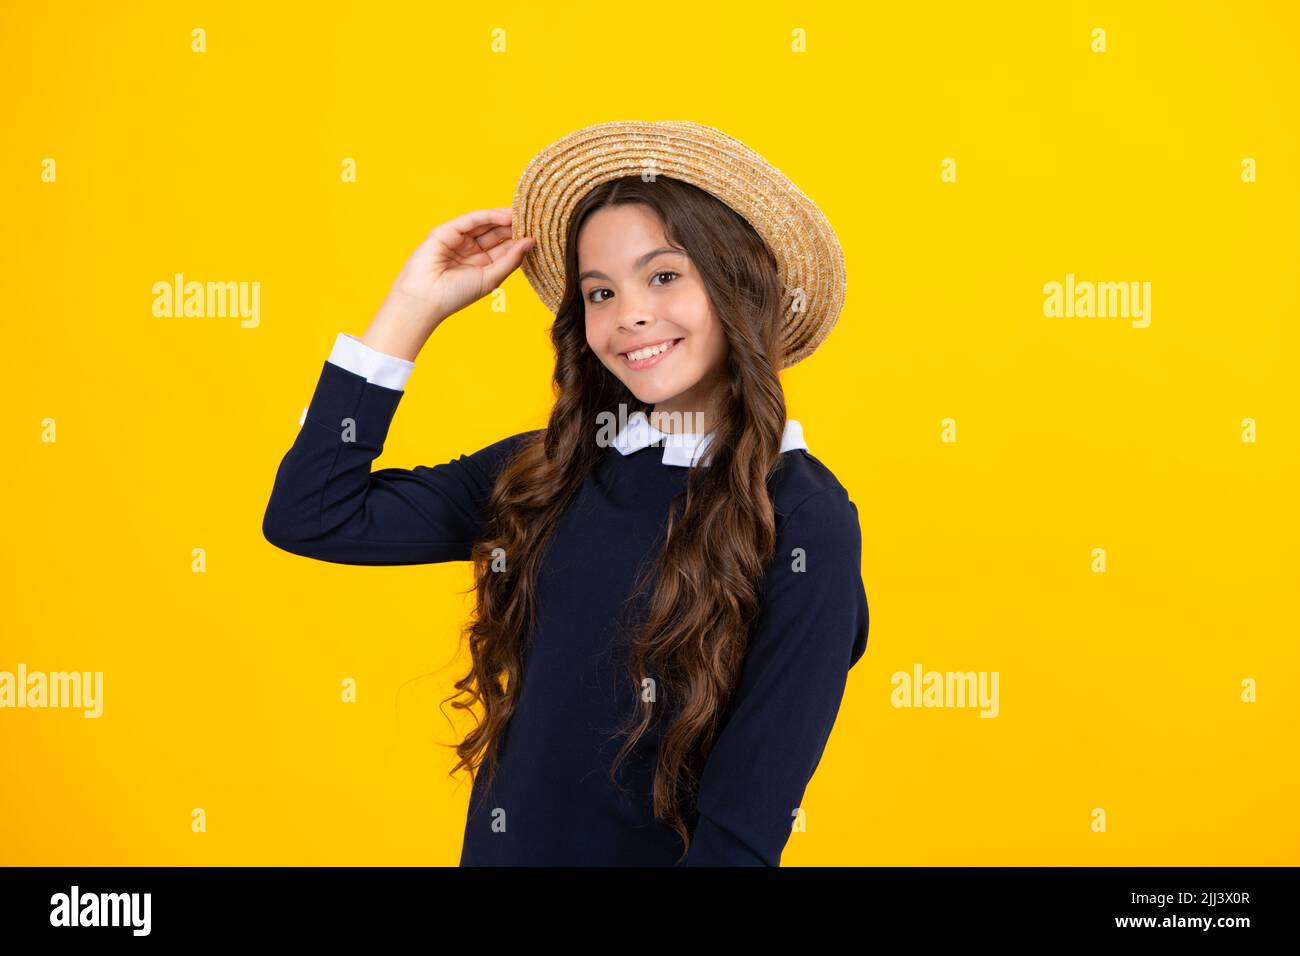 Kleines Mädchen 12,13, 14 Jahre alt auf isoliertem Hintergrund. Kinderstudio Porträt. Emotional Kinder Gesicht. Stockfoto